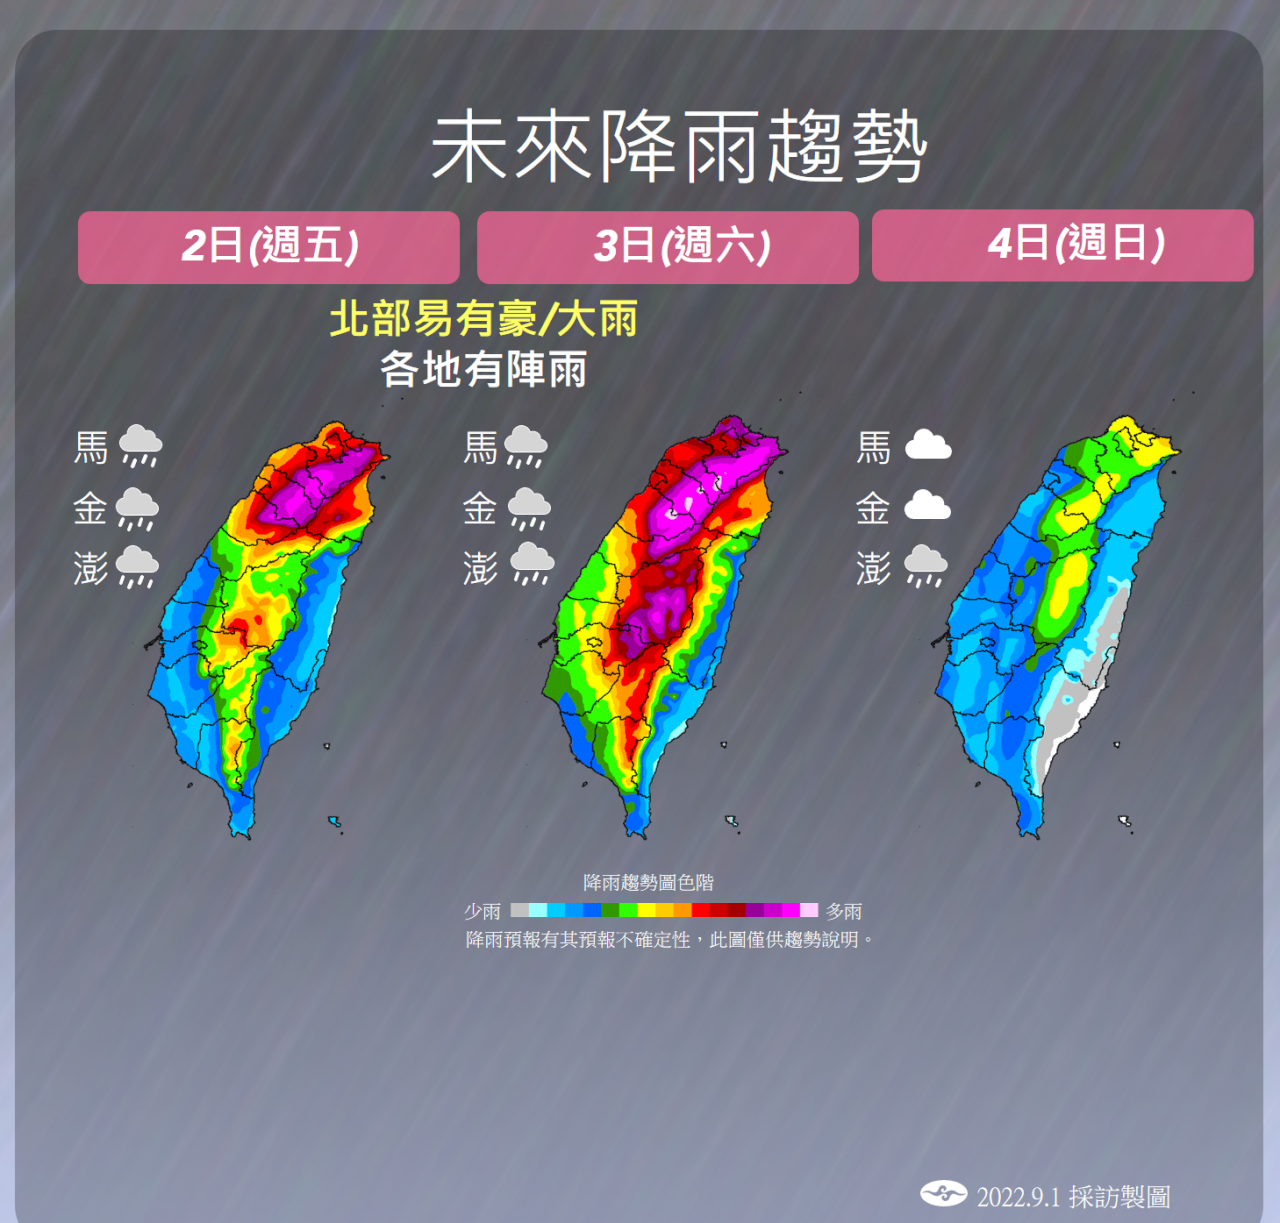 「軒嵐諾」減弱為中颱 海警、強風豪雨特報連發